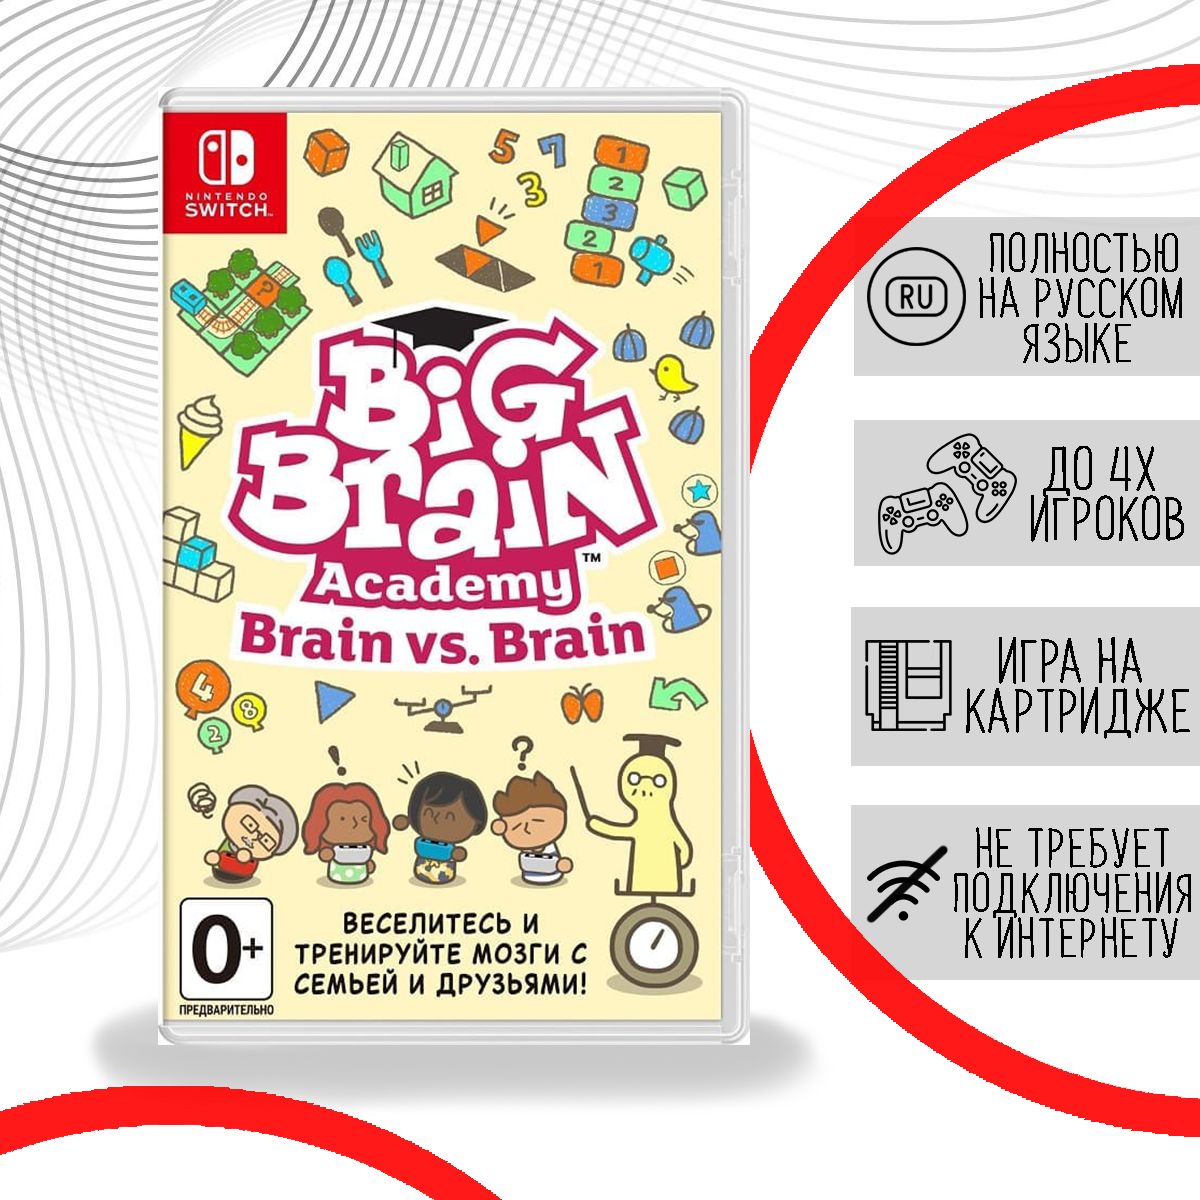 Big Brain Academy Nintendo Switch. Brain vs brain